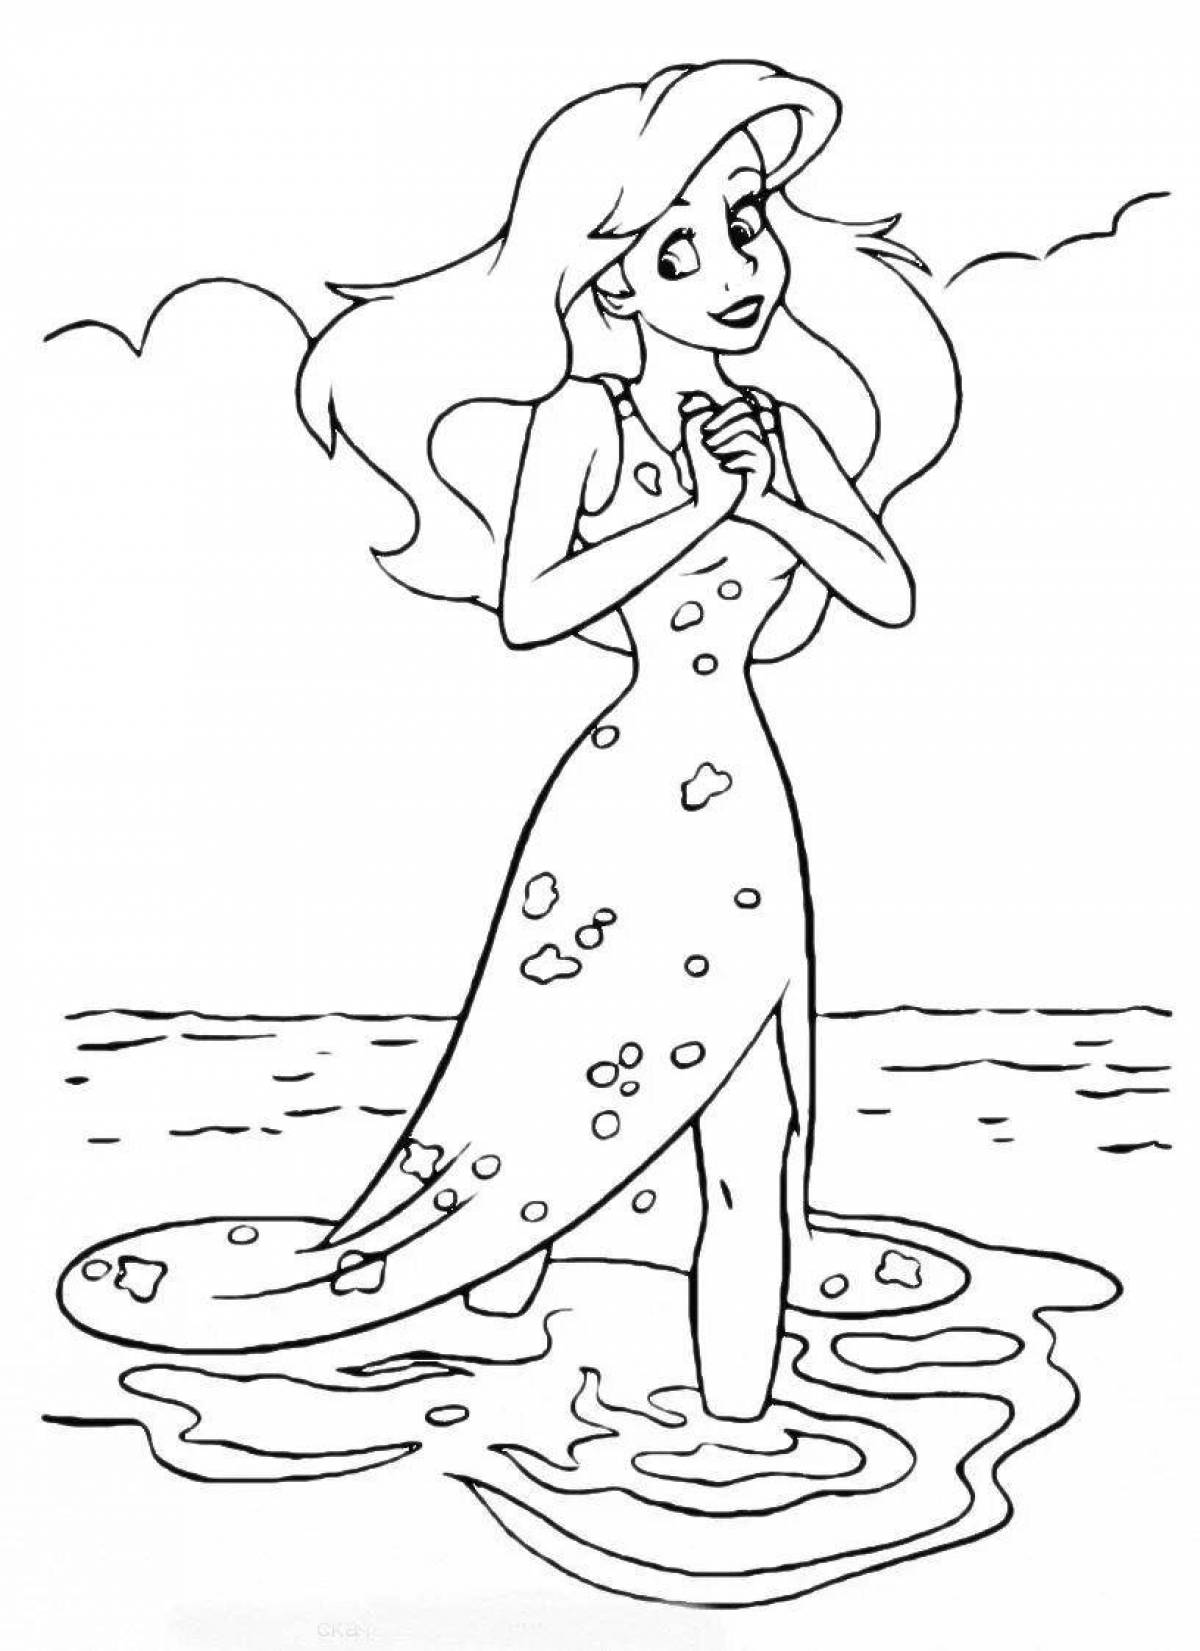 Exquisite mermaid princess coloring book